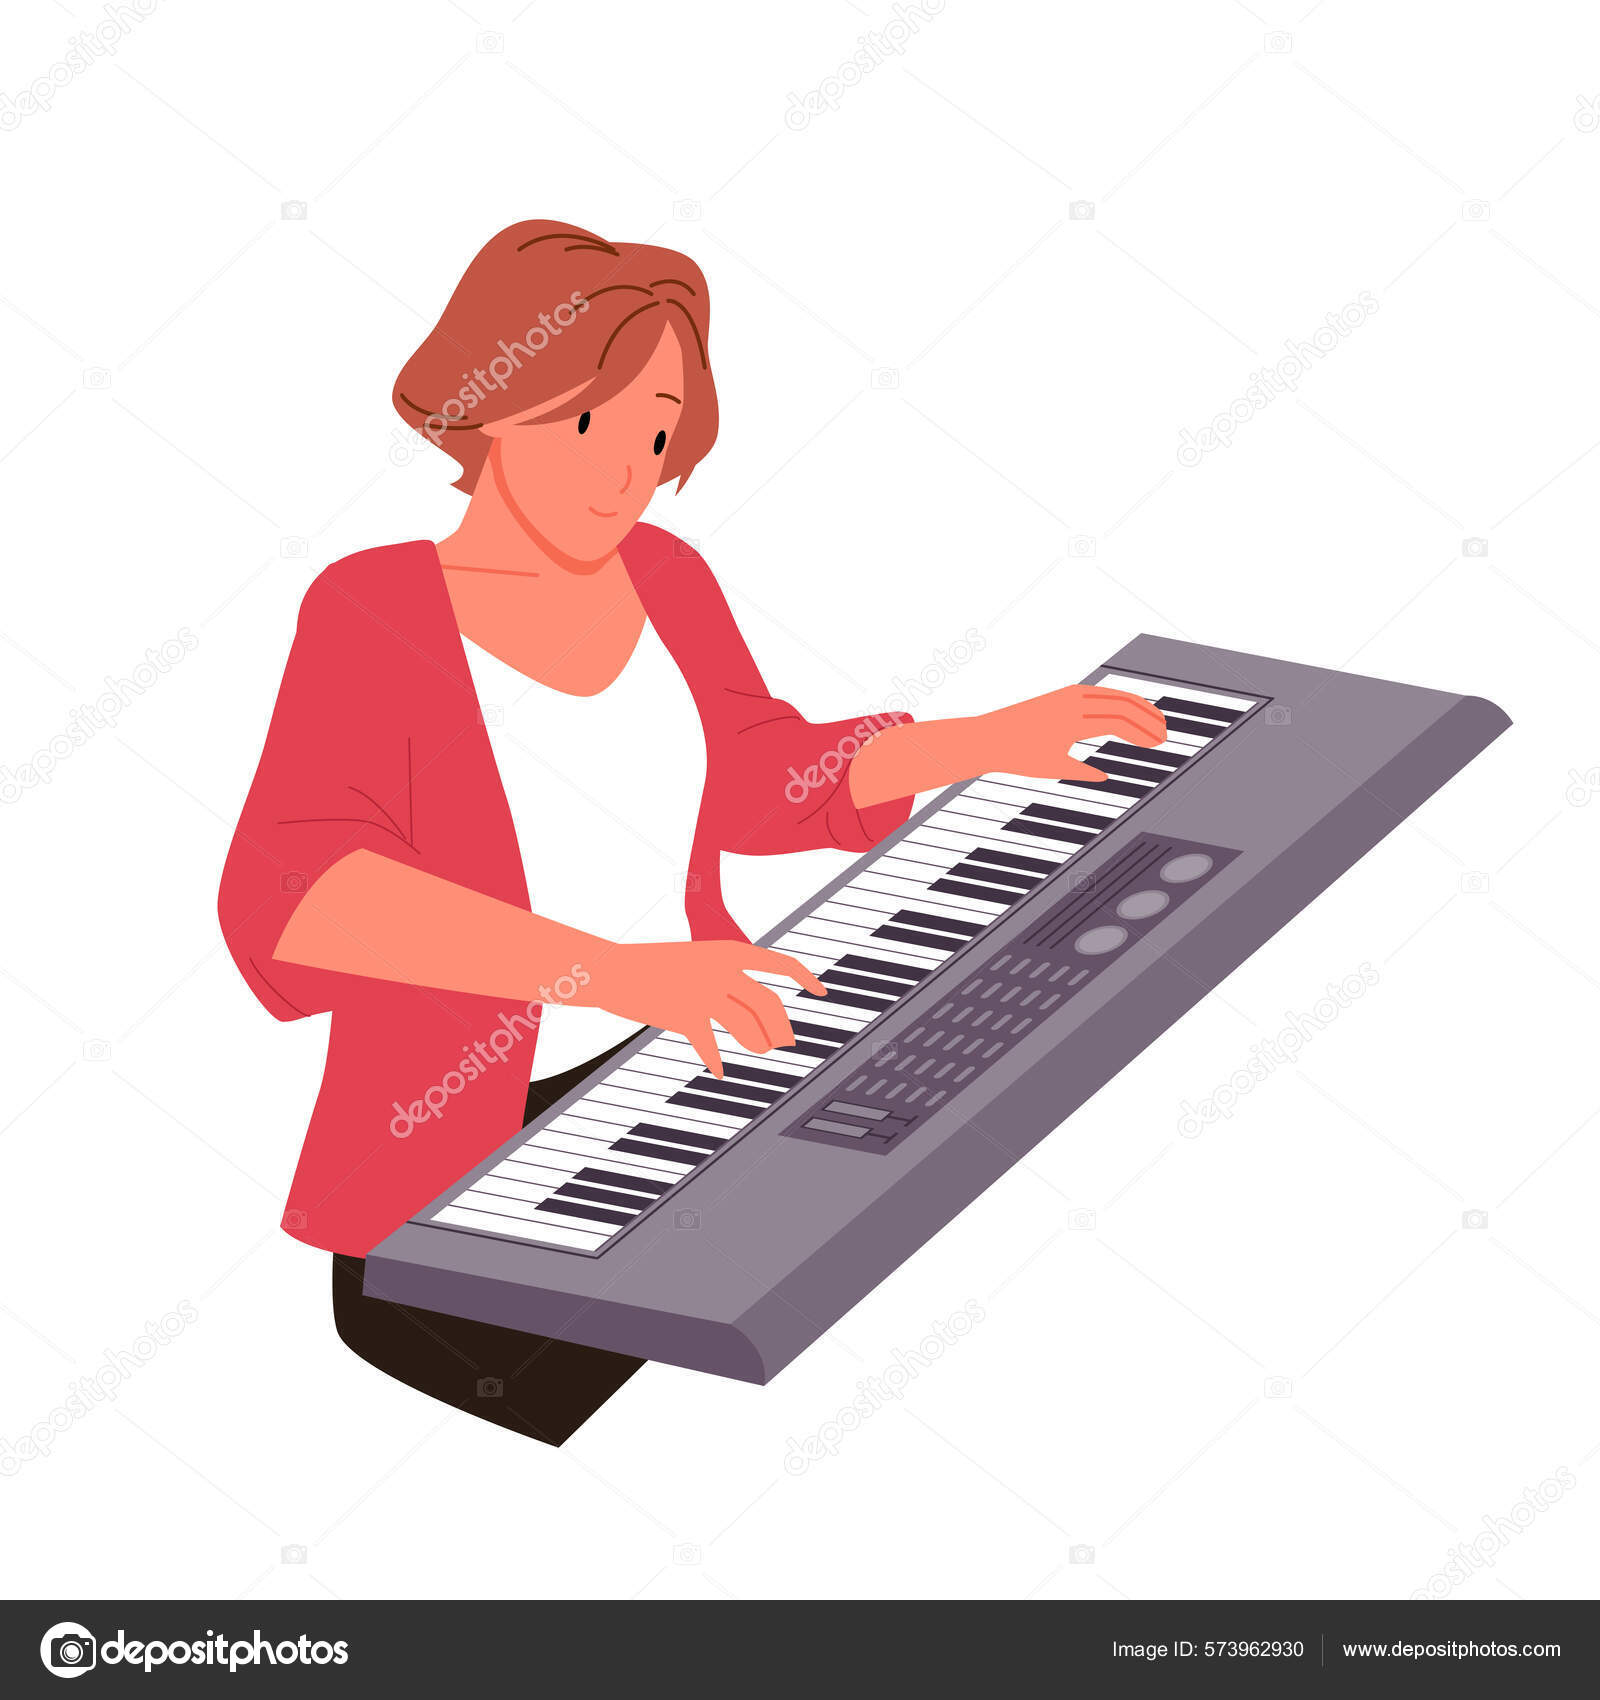 Jogo Do Piano E Da Moça Junto Tempo Feliz Imagem de Stock - Imagem